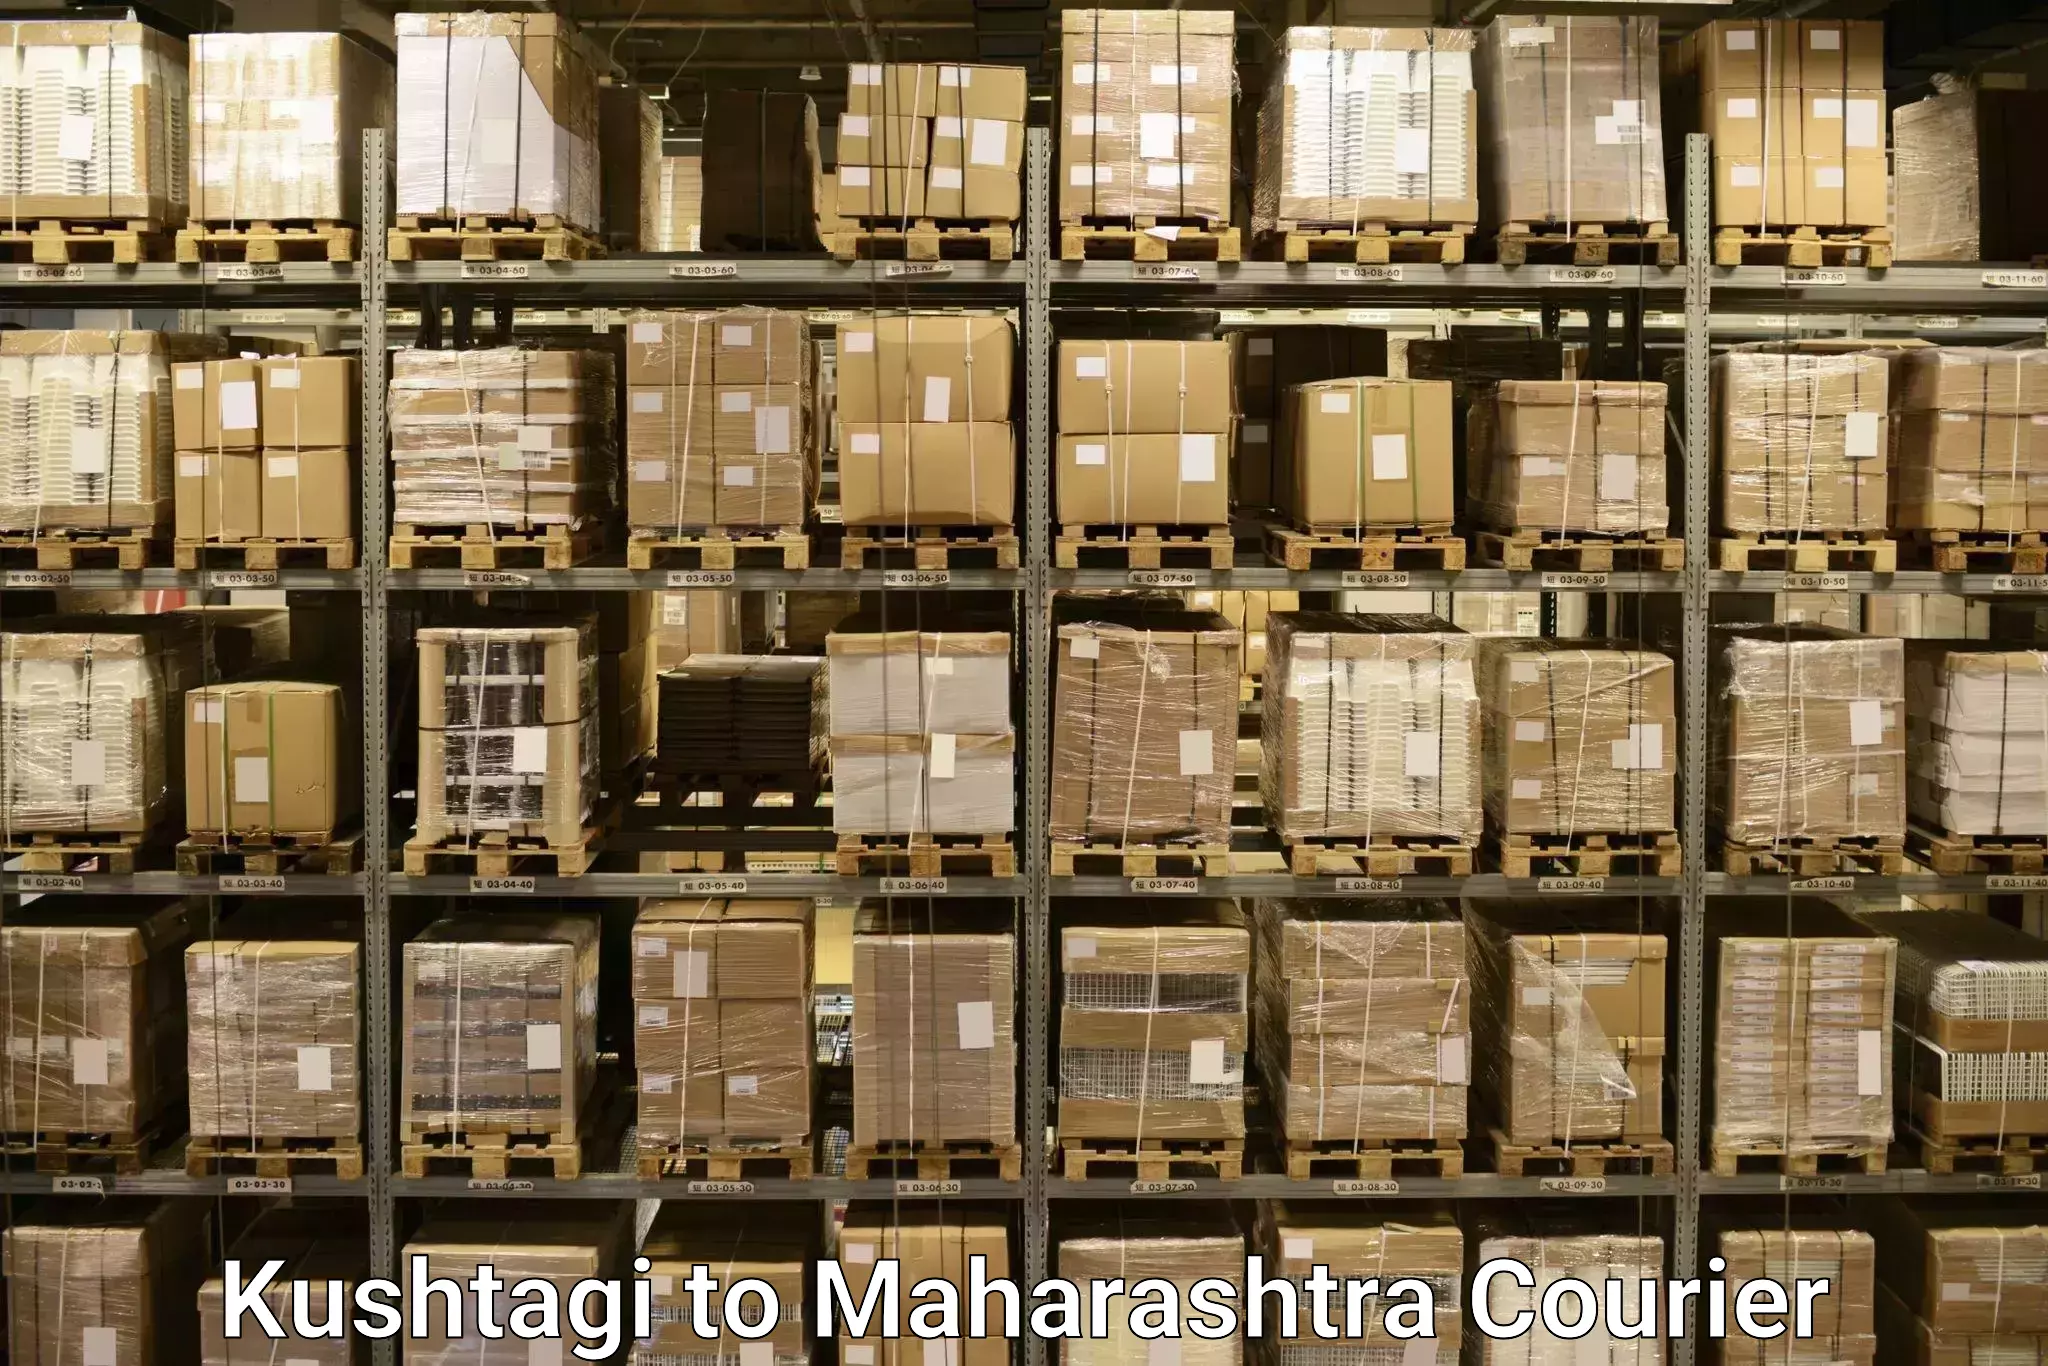 Luggage delivery providers Kushtagi to Aurangabad